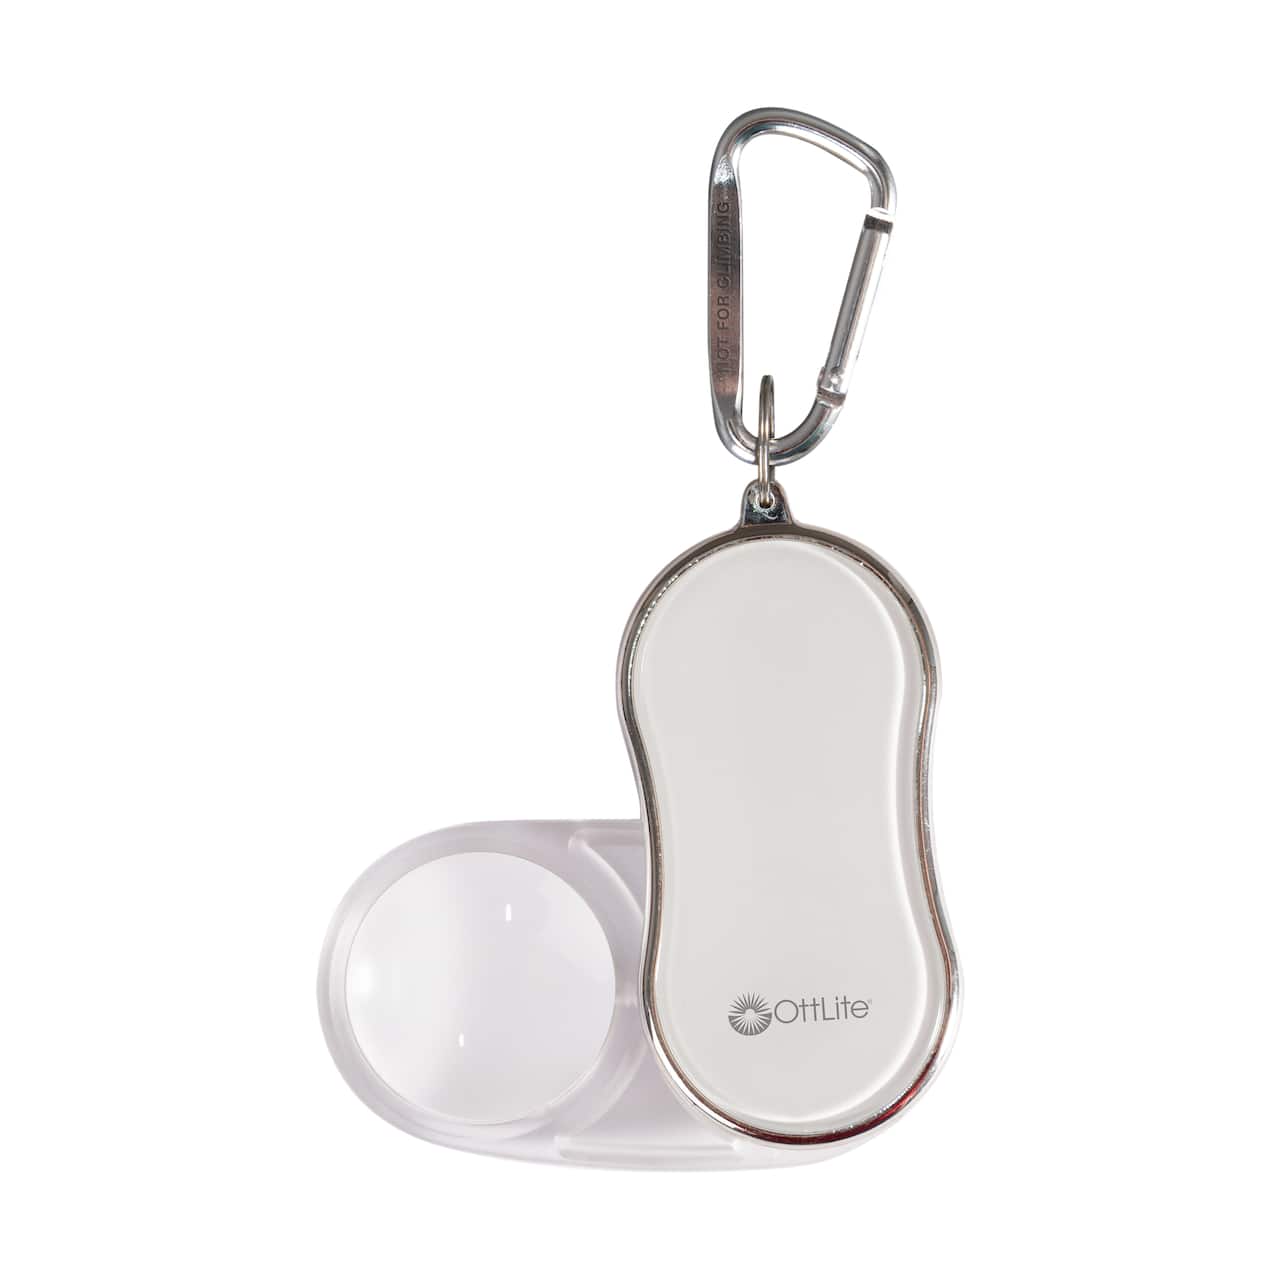 Ottlite Pocket Lighted Magnifier